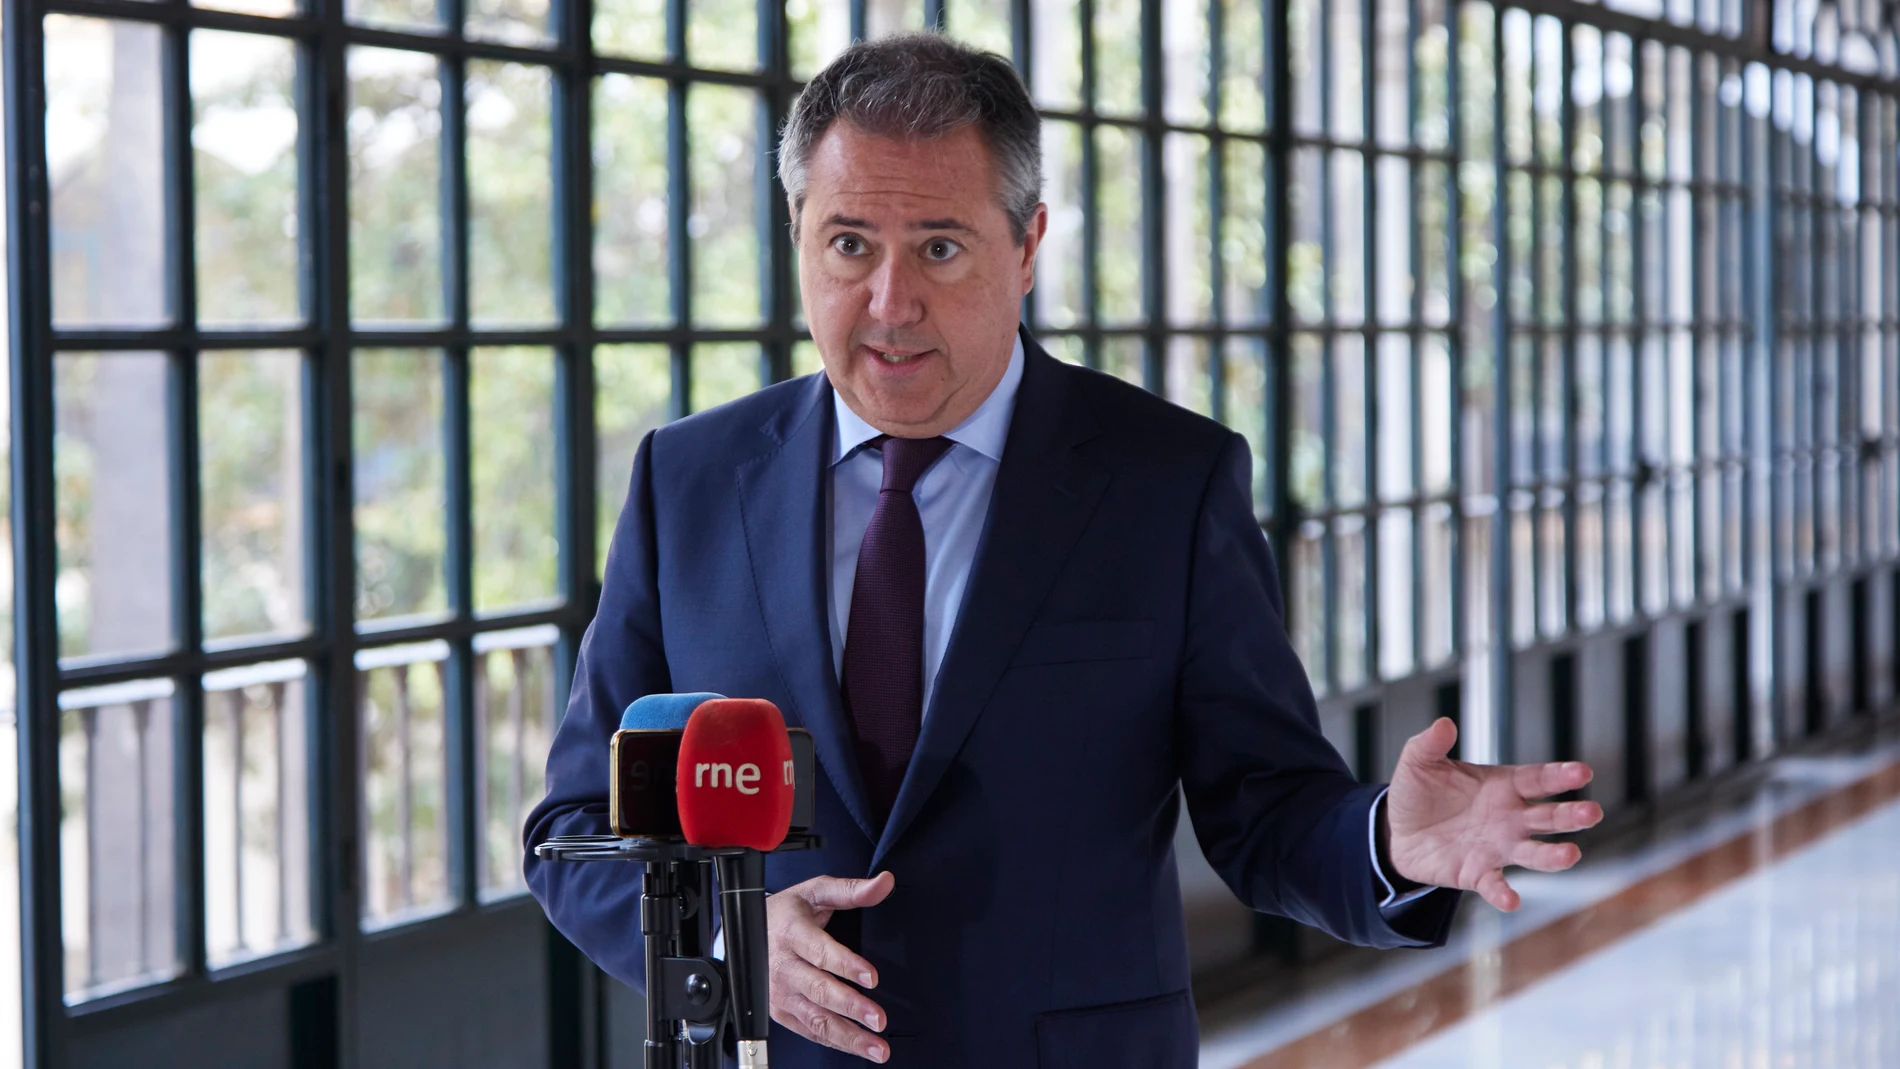 El secretario general del PSOE de Andalucía, Juan Espadas